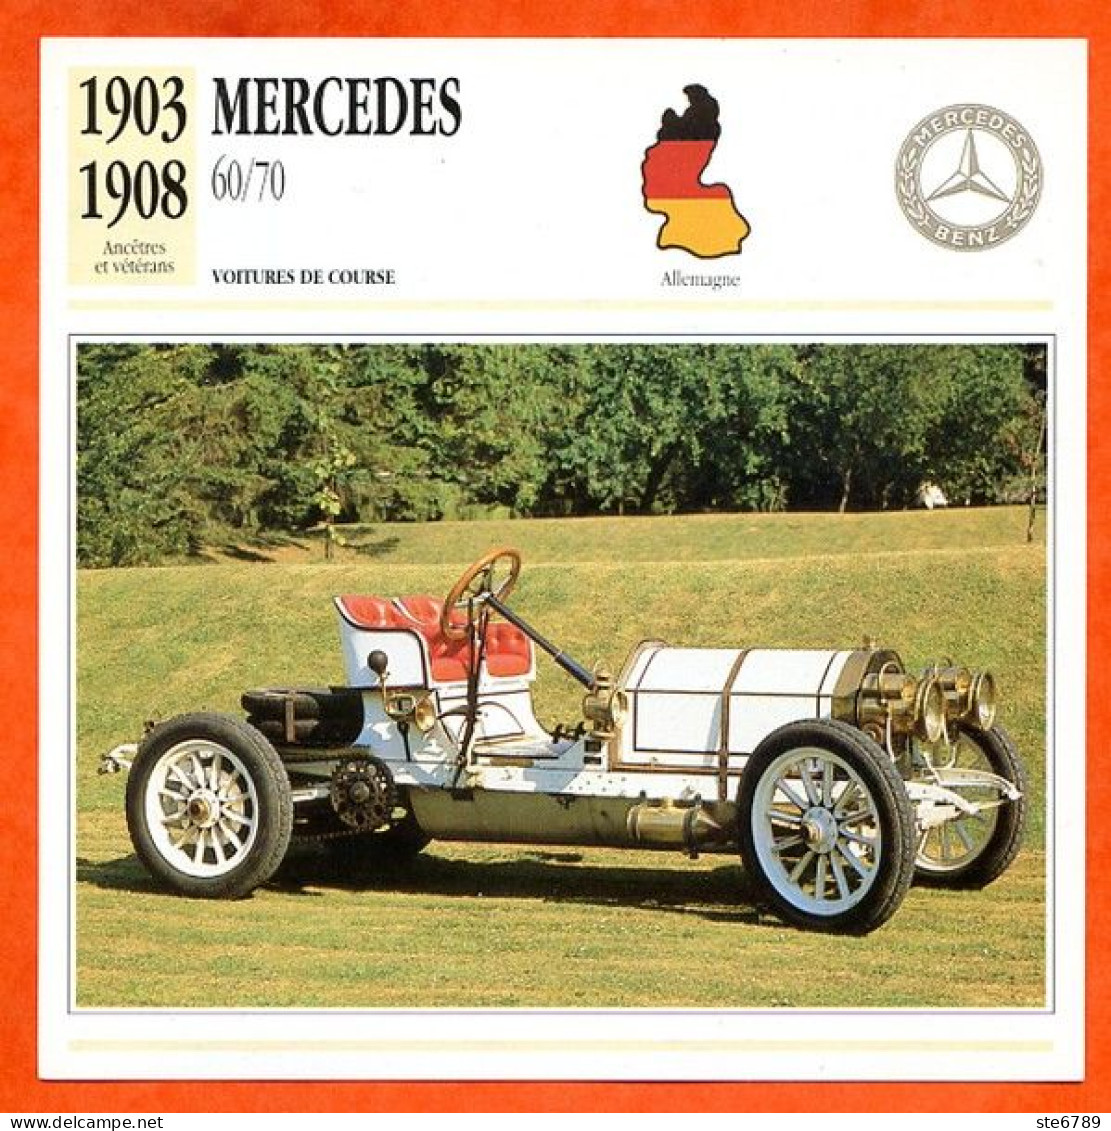 MERCEDES 60/70 1903 Voiture De Course Allemagne Fiche Technique Automobile - Automobili